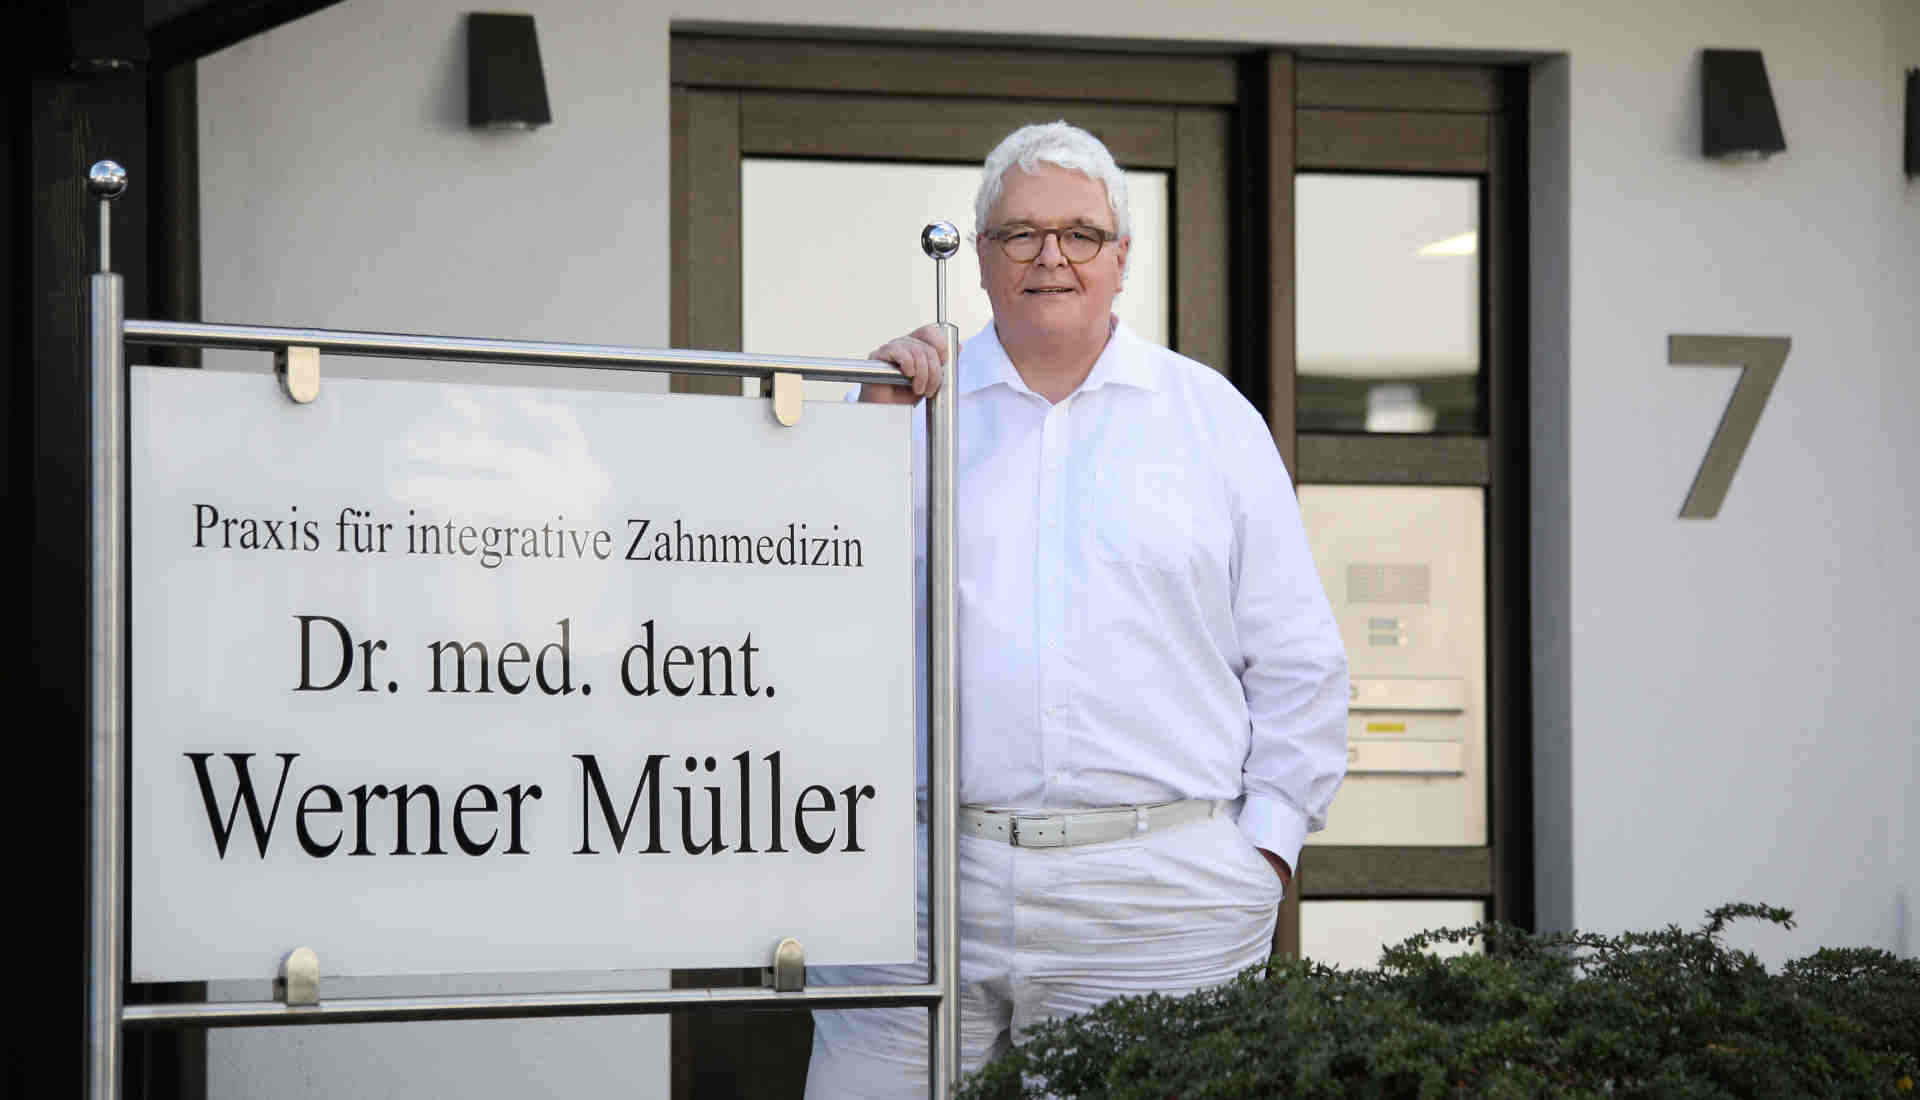 Dr. med. dent. Werner Müller vor Praxis Wewer